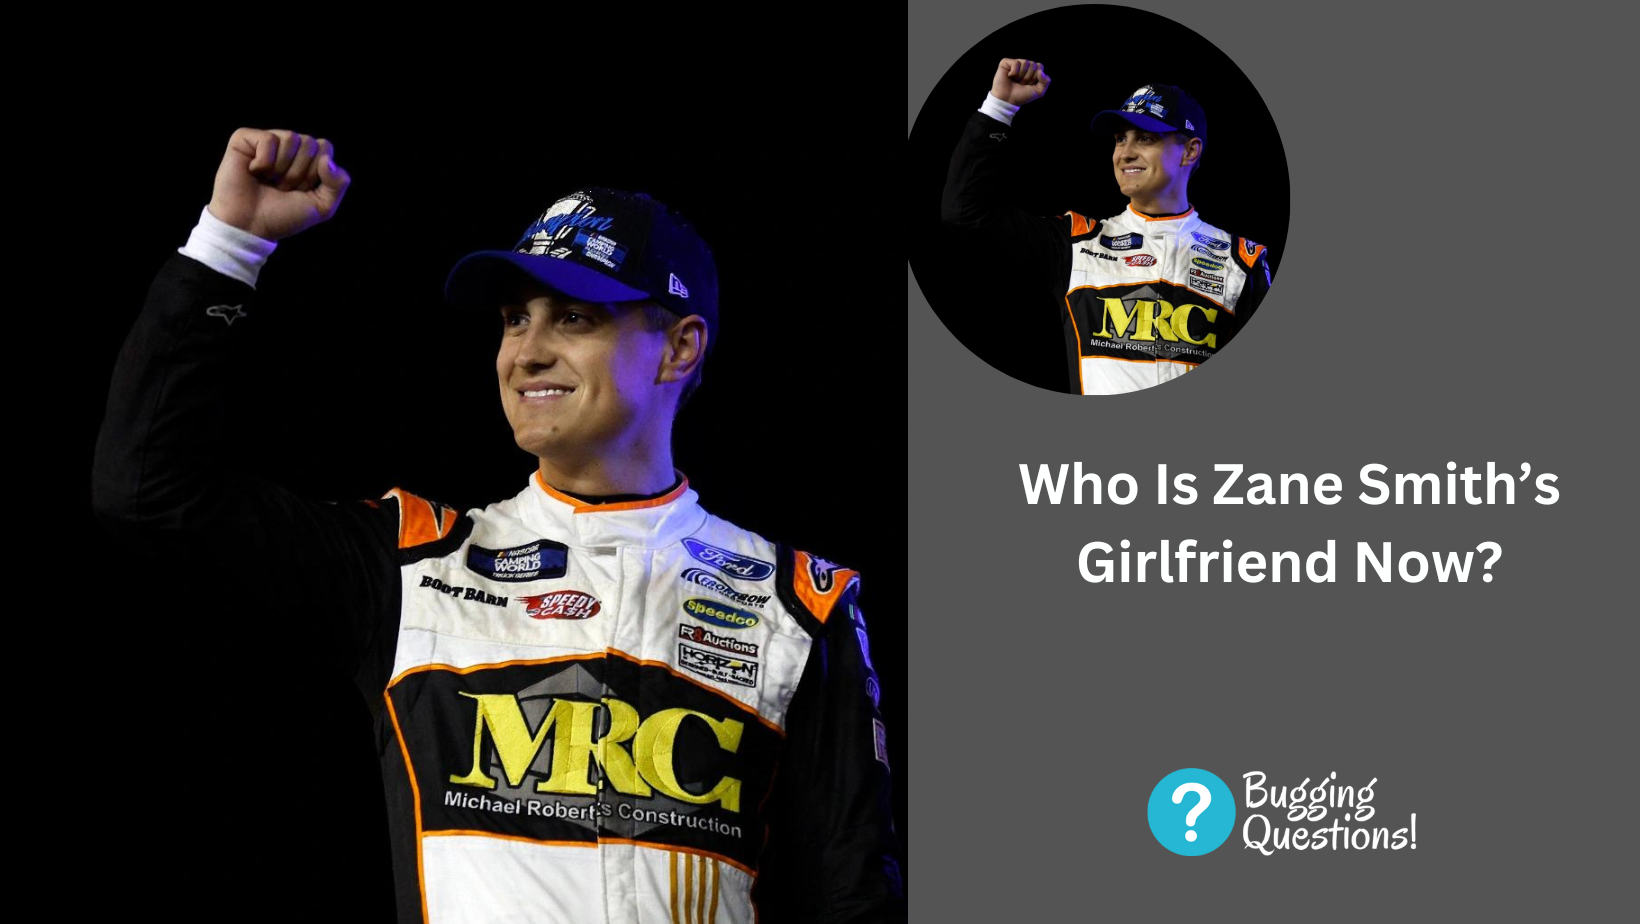 Who Is Zane Smith’s Girlfriend Now?